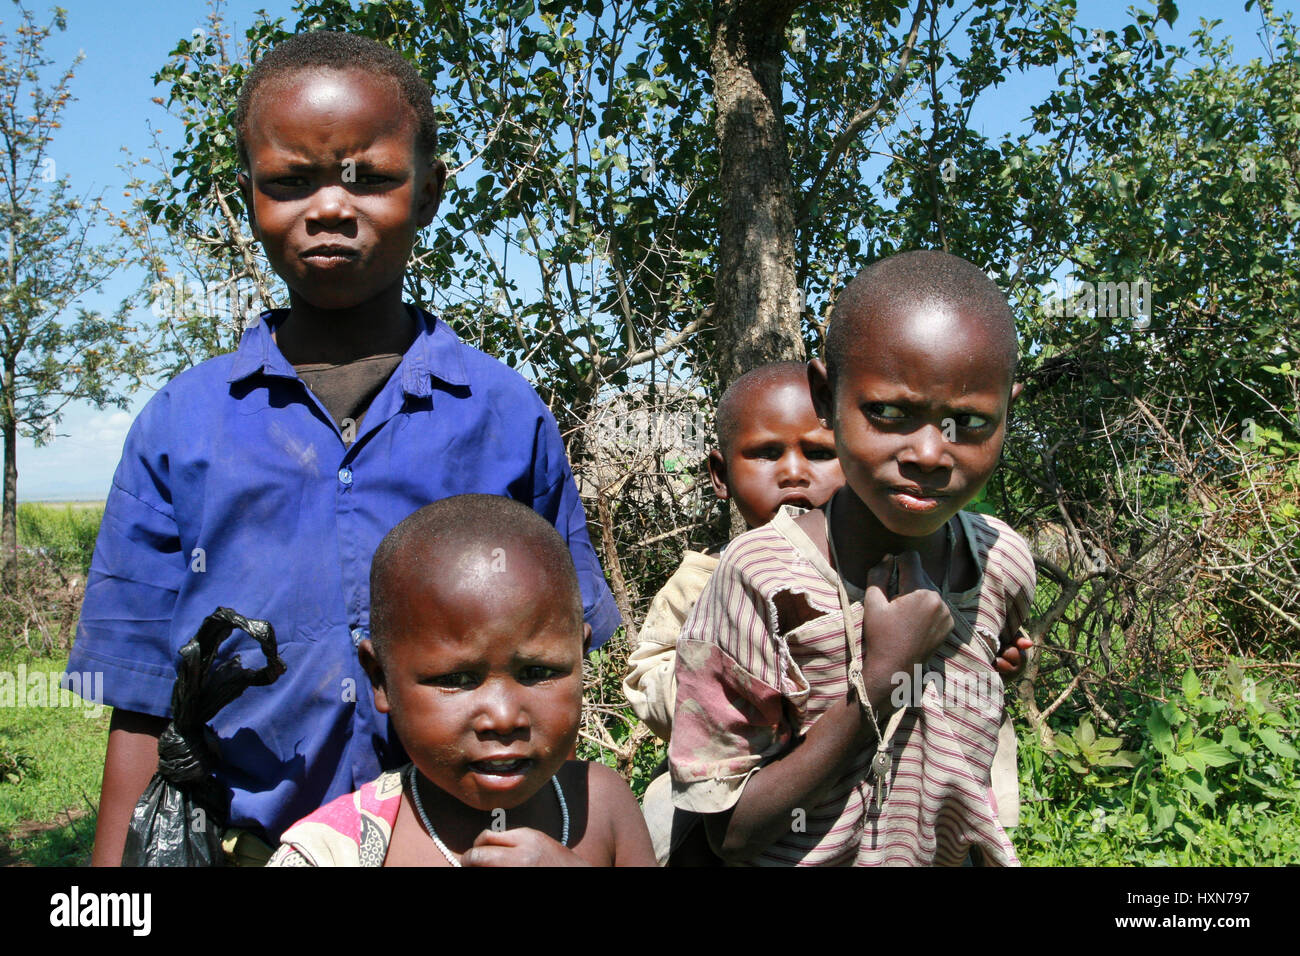 Meserani Snake Park, Arusha, Tansania - 14. Februar 2008: Mehrere afrikanische schwarze Kinder Maasai in zerlumpten Kleidern. Stockfoto